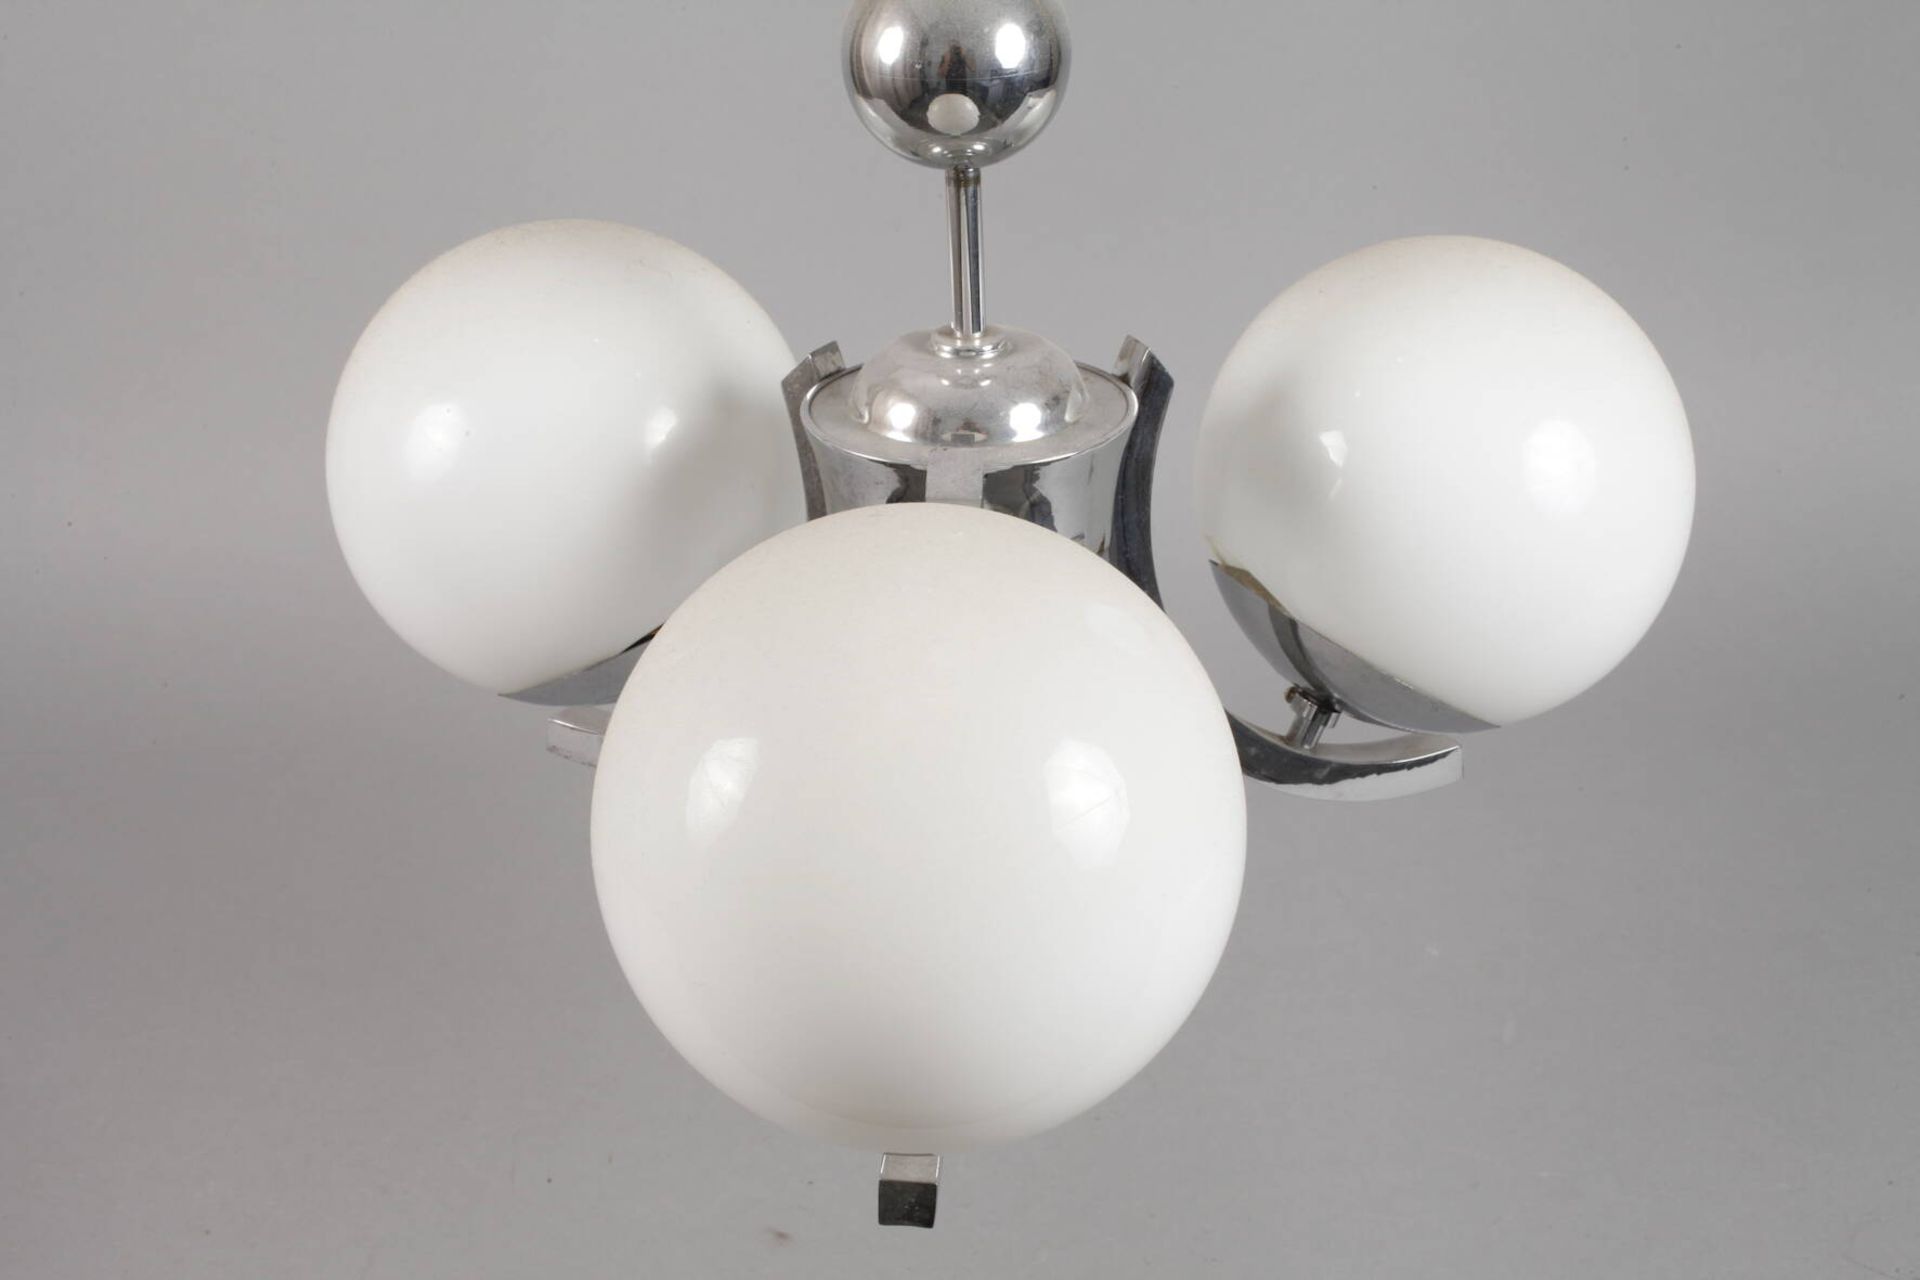 Drei Deckenlampen Art déco1920er Jahre, verchromte Metallgestänge mit jeweils drei kurzen, c- - Bild 2 aus 8